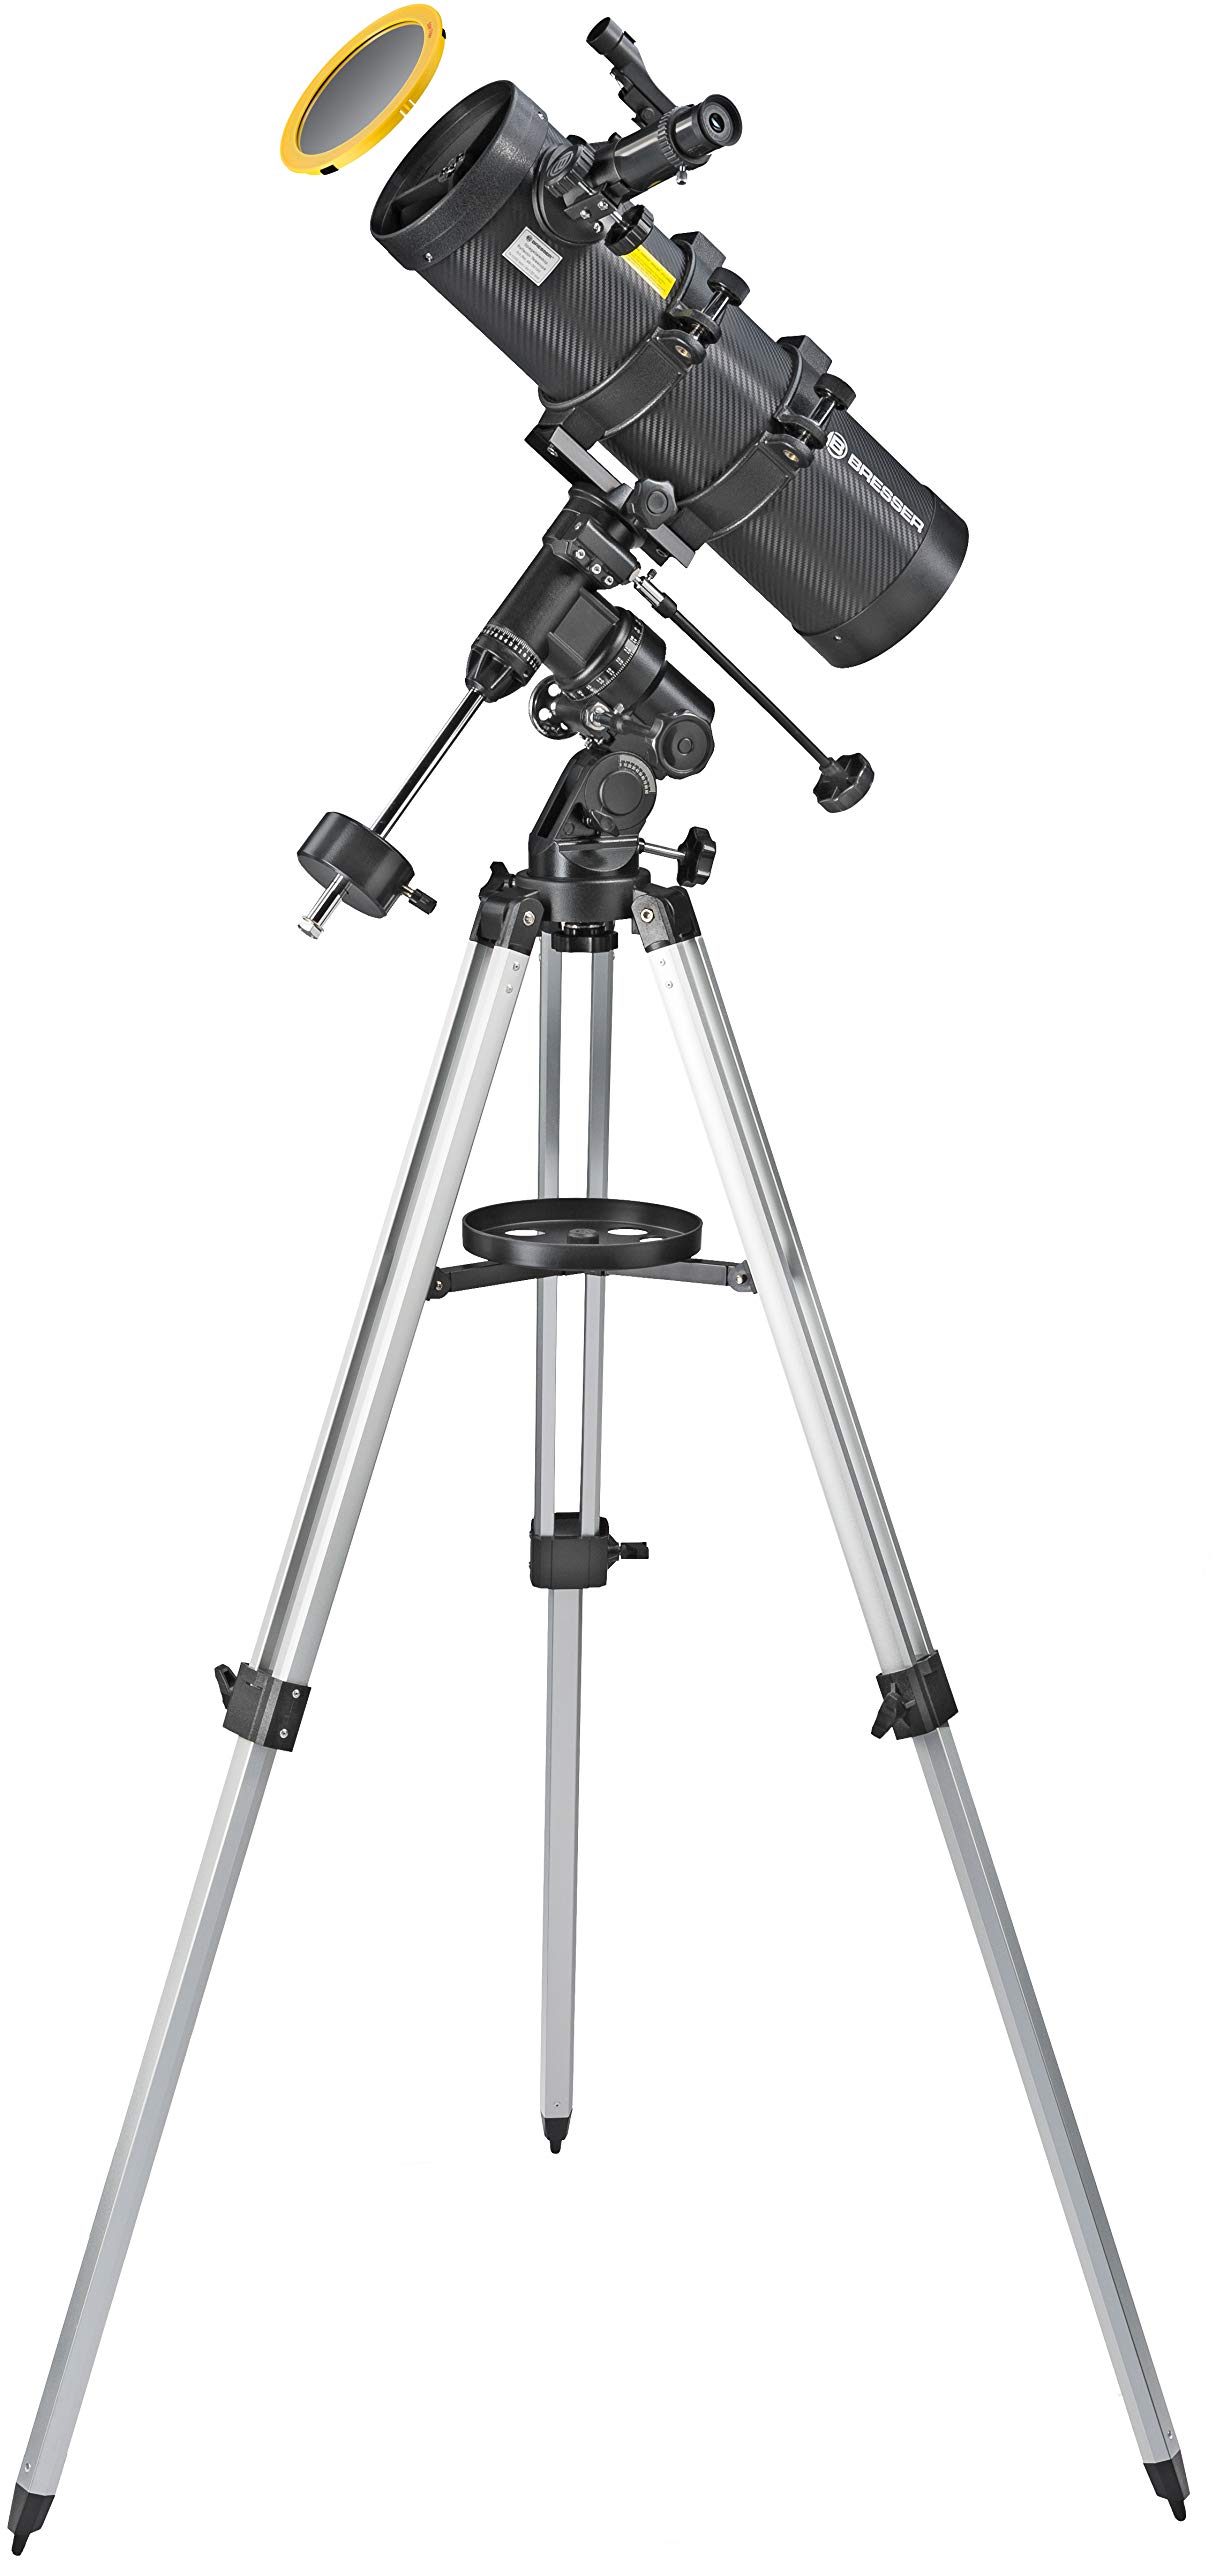 BRESSER Teleskop Spica 130/1000 EQ3 - Spiegelteleskop mit Smartphone-Adapter & Sonnenfilter